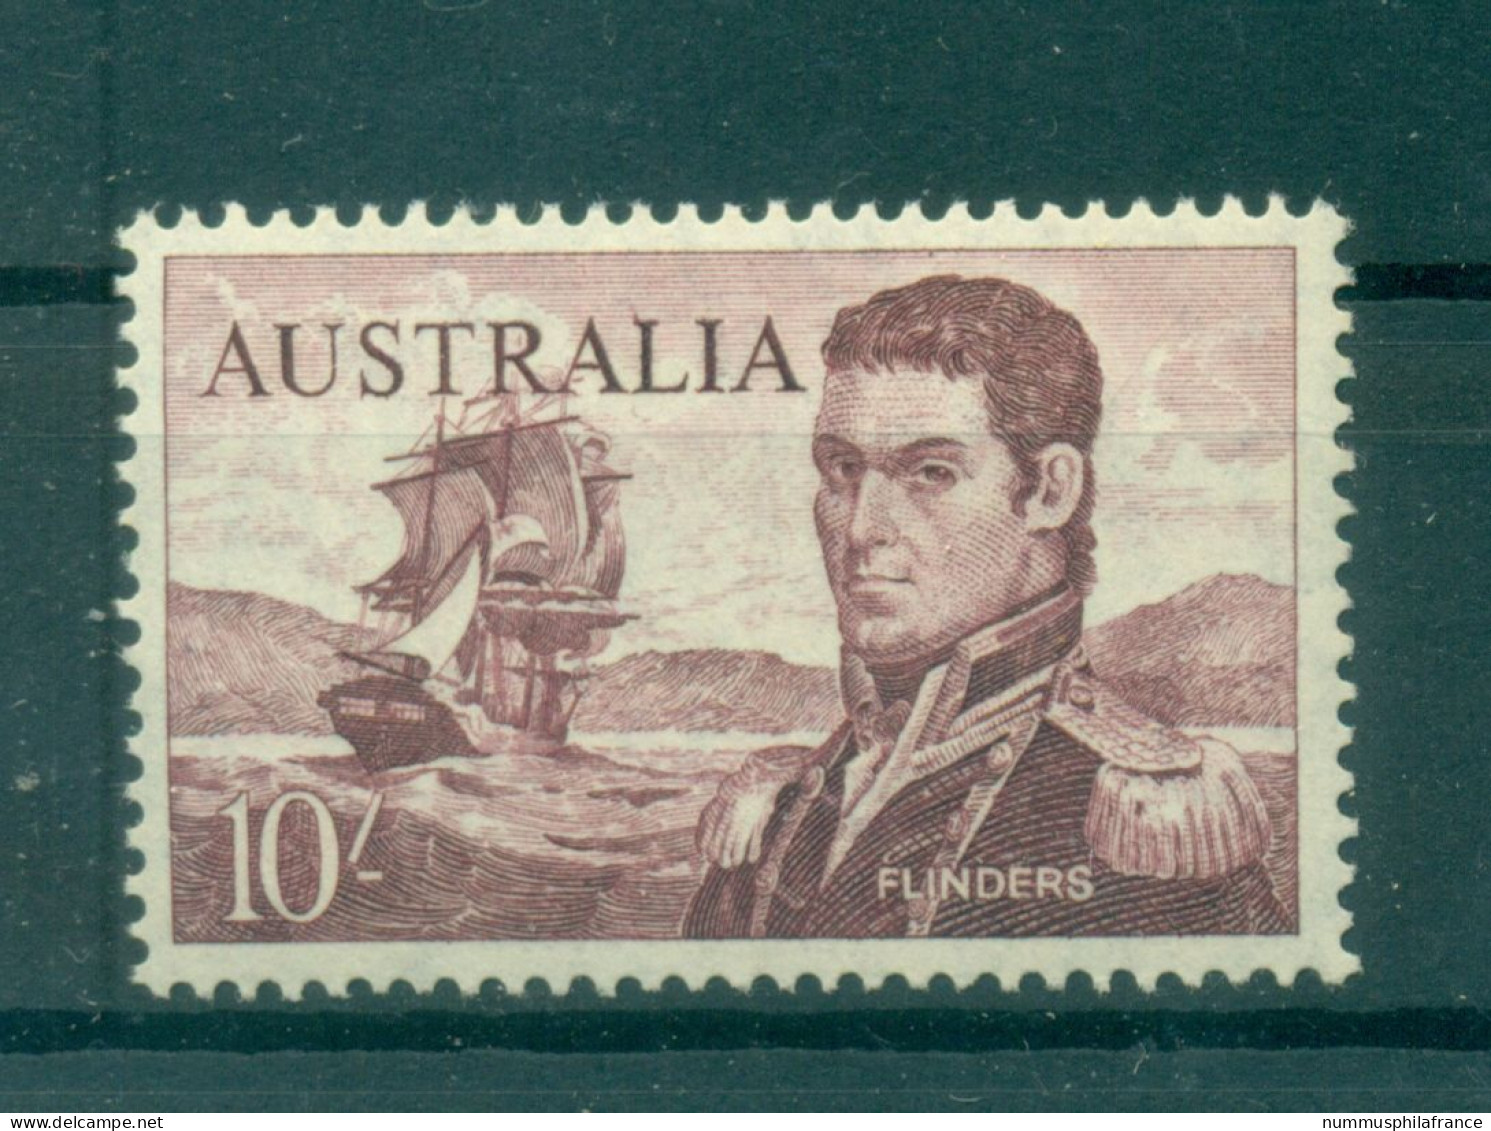 Australie 1963 - Y & T N. 302 - Série Courante (Michel N. 334 A) - Mint Stamps